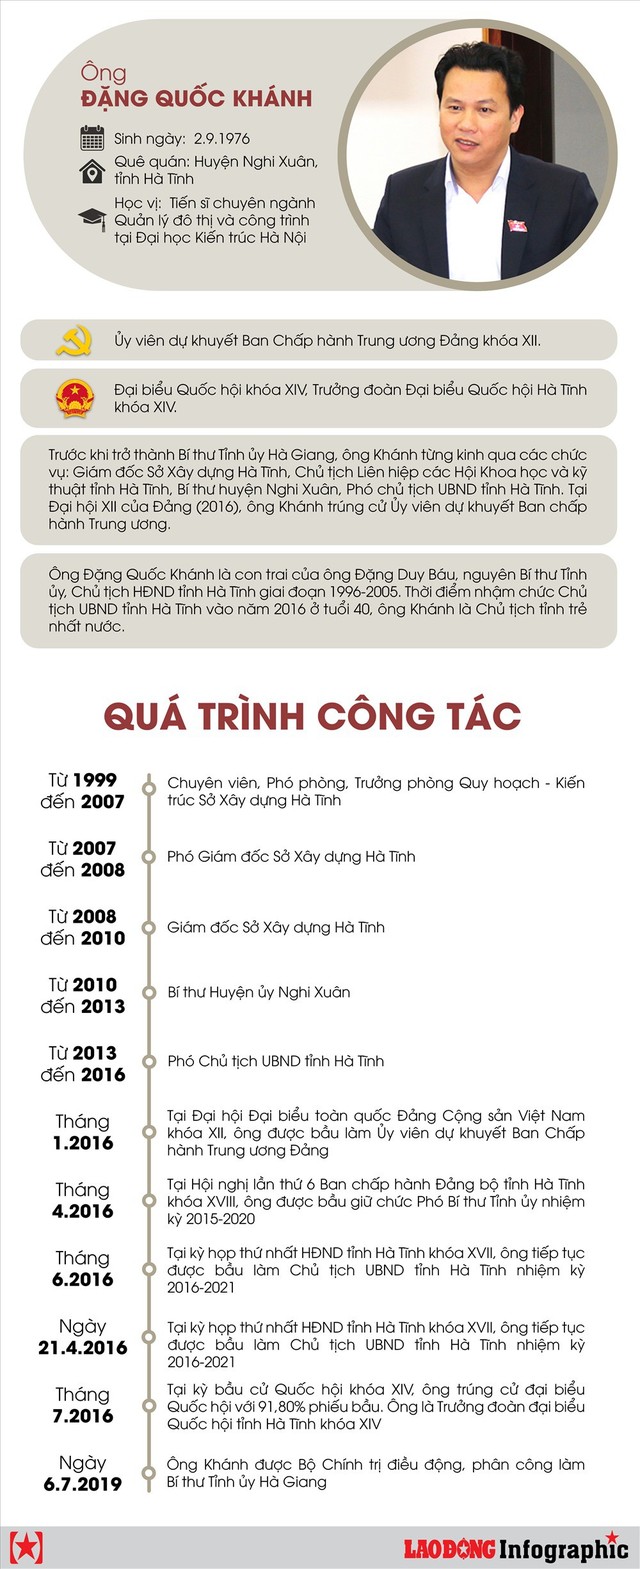 Infographic: Chân dung tân Bí thư Tỉnh ủy Hà Giang Đặng Quốc Khánh - Ảnh 1.